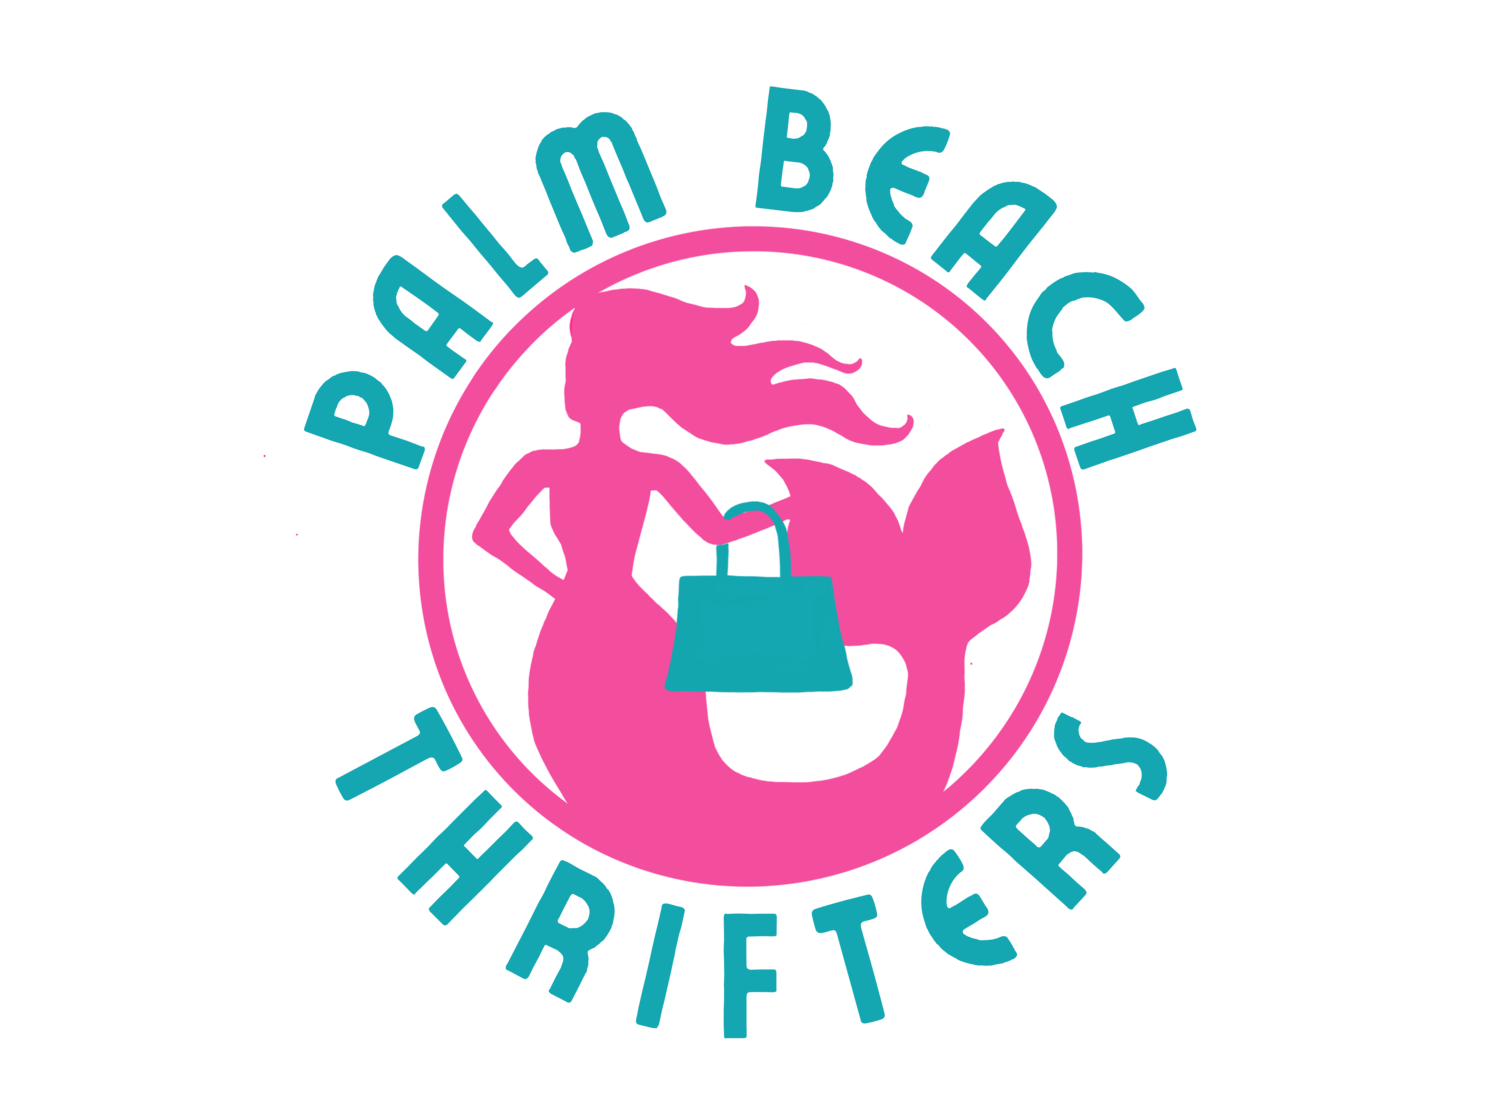 Palm Beach Thrifters